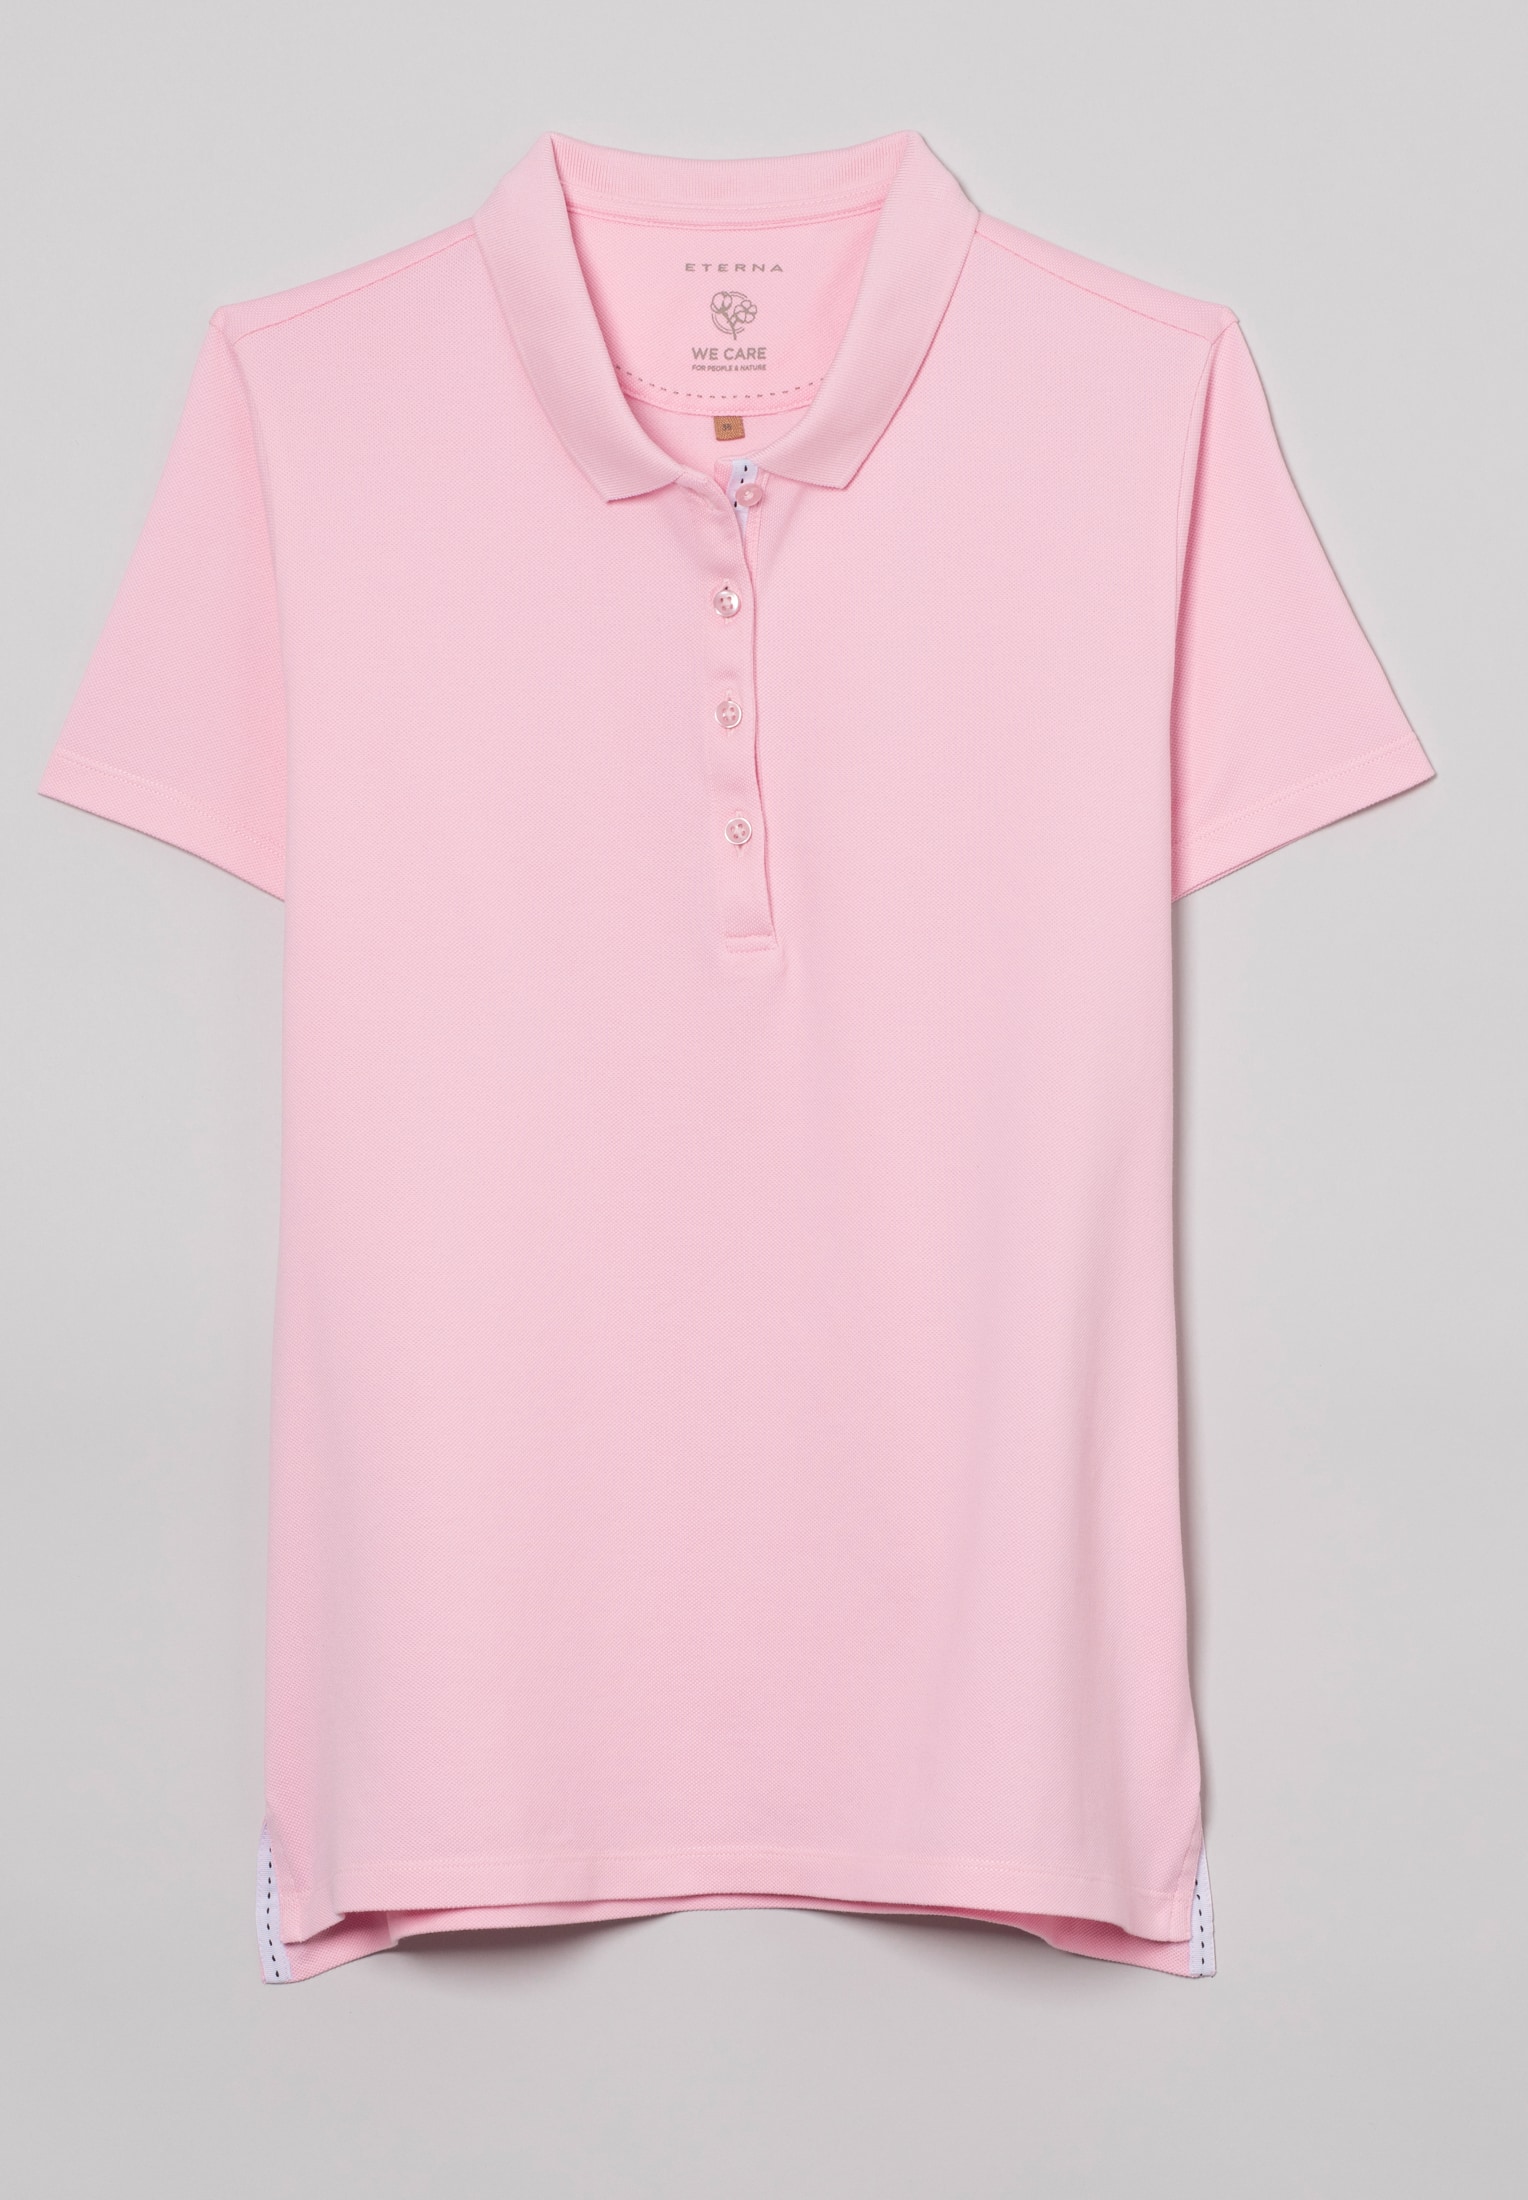 Poloshirt in soft | pink unifarben | L Kurzarm 2SP00006-15-12-L-1/2 | soft pink 